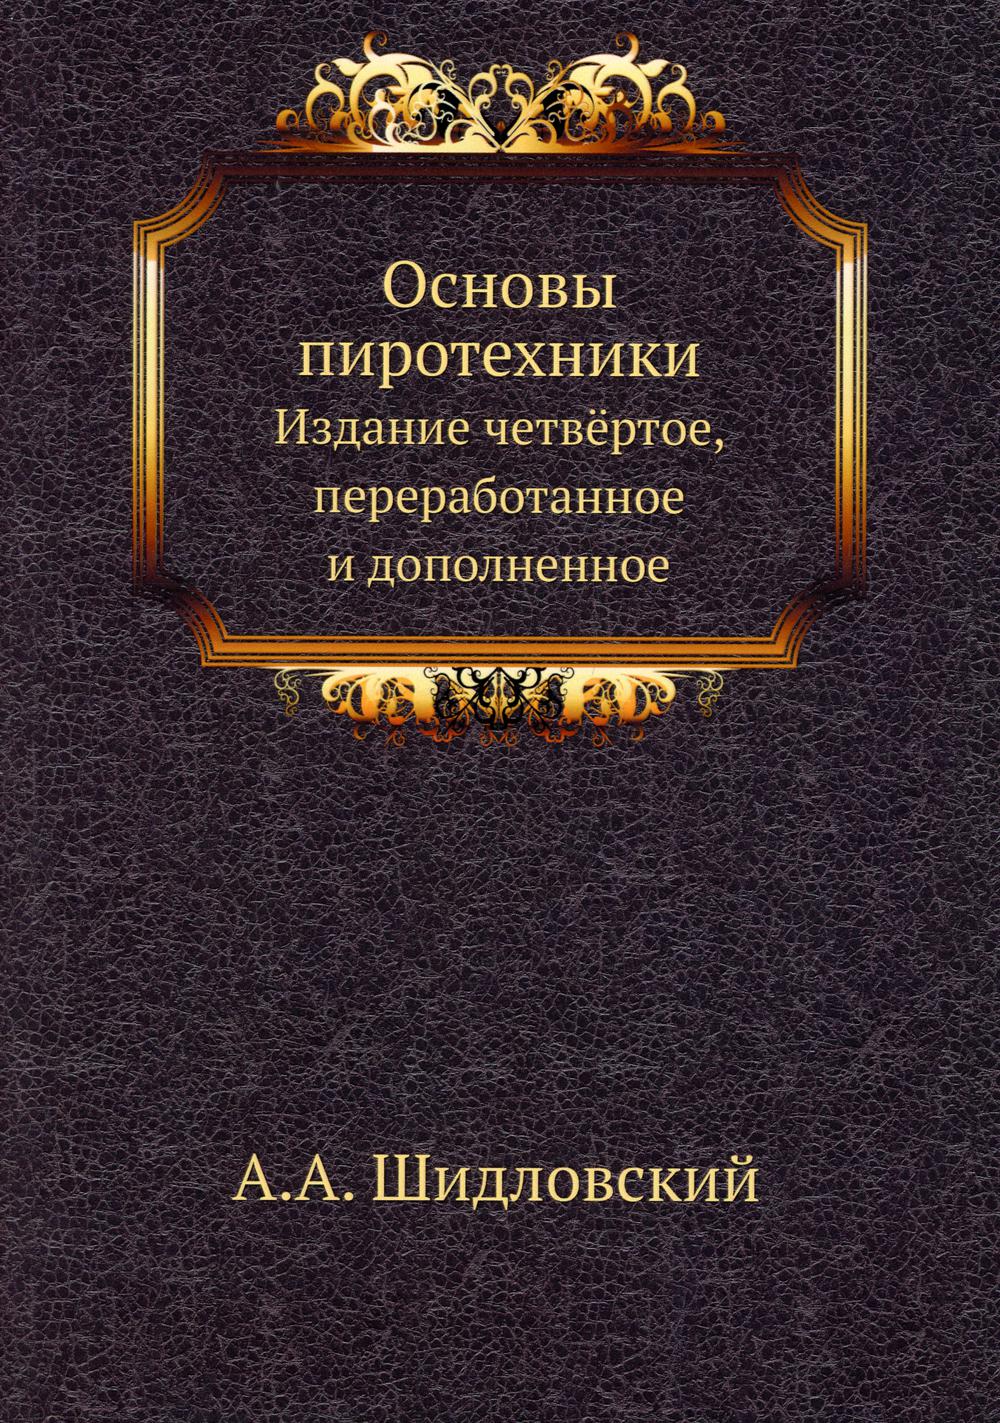 Основы пиротехники. 4-е изд., перераб.и доп. (репринтное изд.)